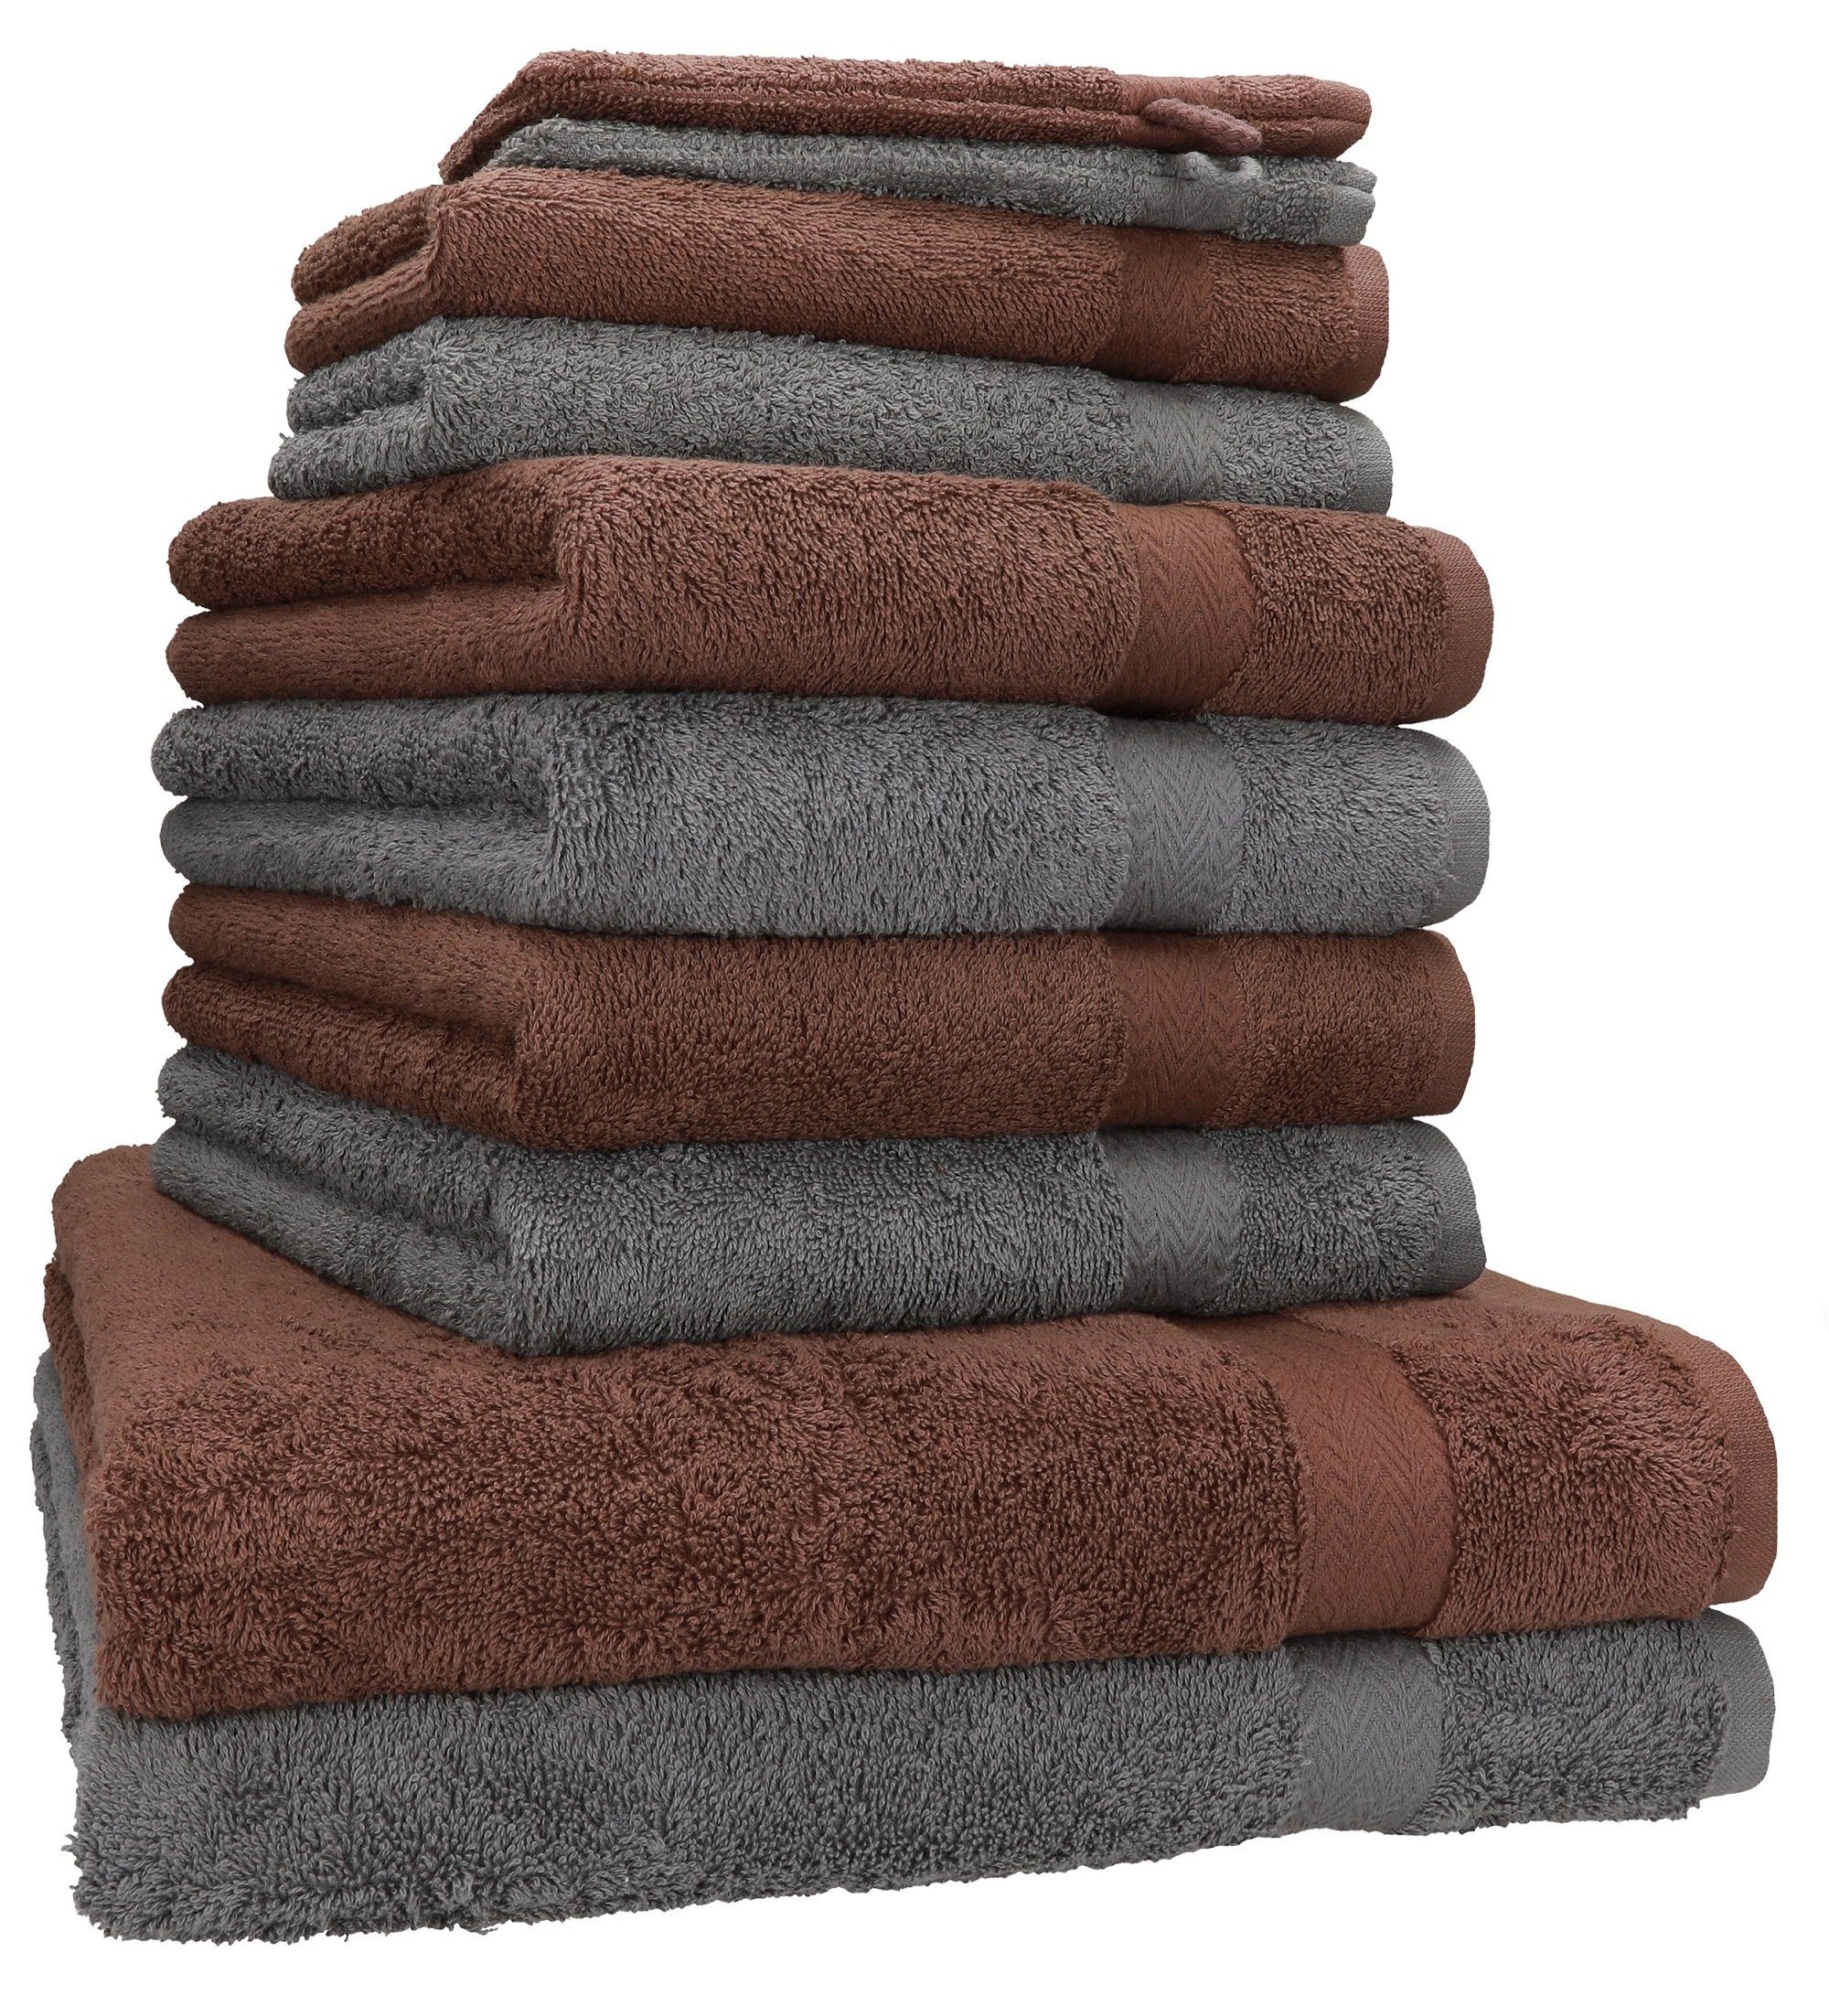 Betz Handtuch Set 10-TLG. Handtuch-Set Premium Farbe Anthrazit & Nussbraun, 100% Baumwolle, (10-tlg)